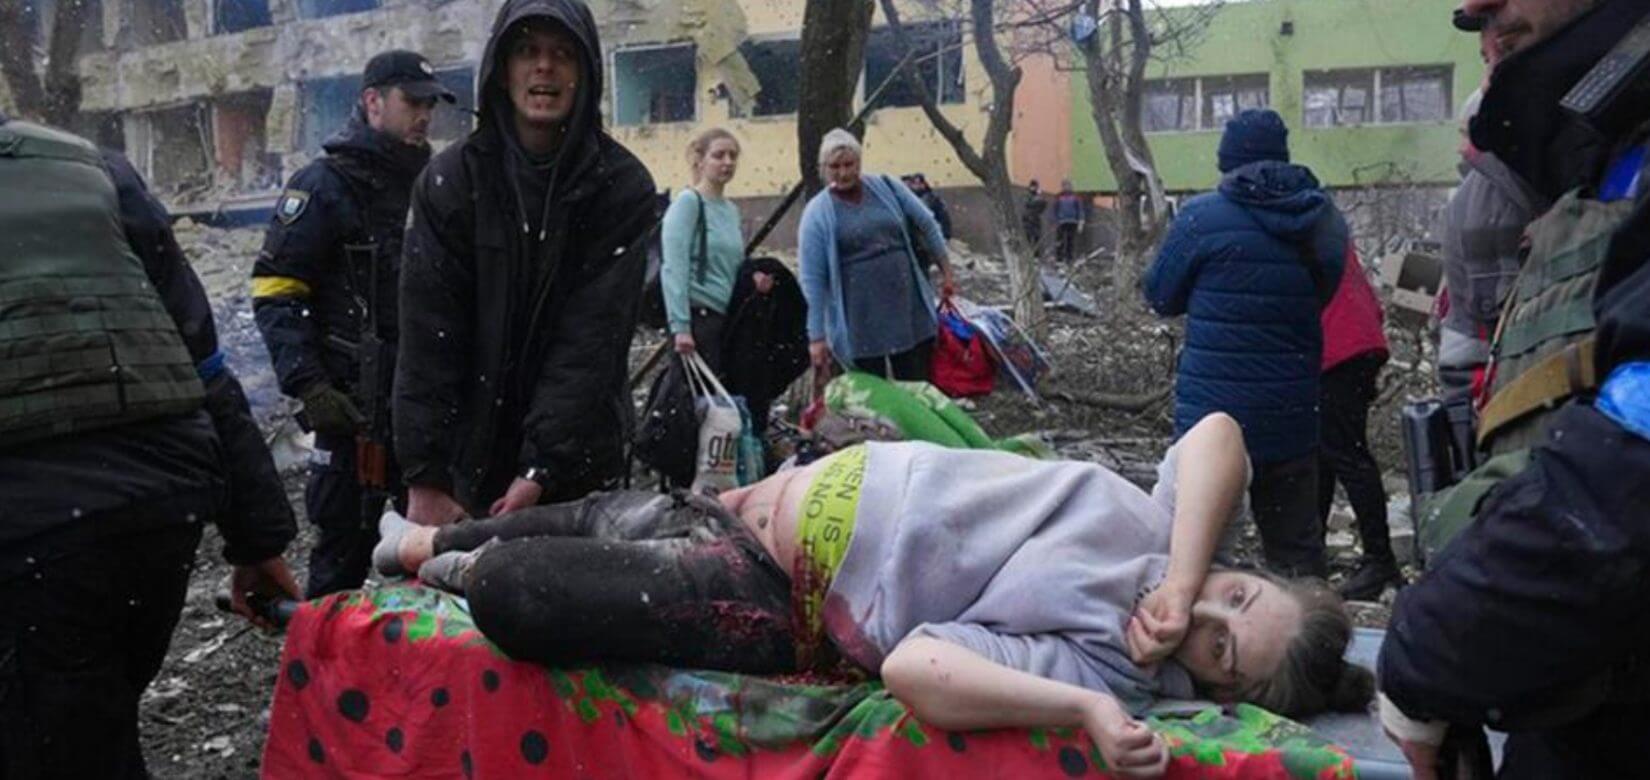 Η φρίκη του πολέμου: Σκοτώθηκε βρέφος από επίθεση σε μαιευτήριο στην Ουκρανία